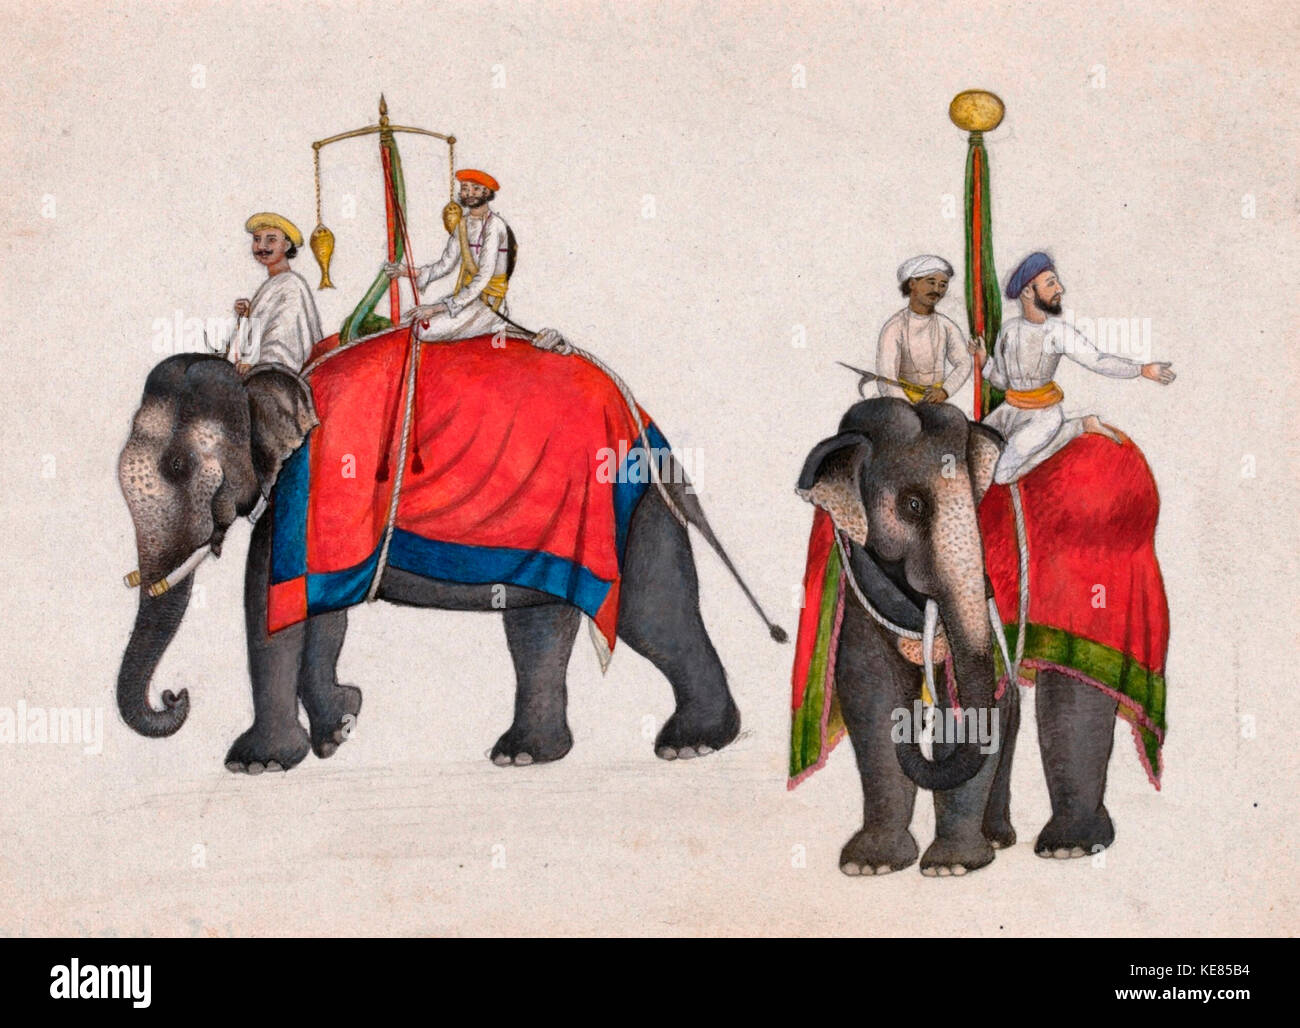 Deux éléphants transportant le poisson et sun insigne de souveraineté Mughal - Mazhar Ali Khan (peut-être), vers 1840 Banque D'Images